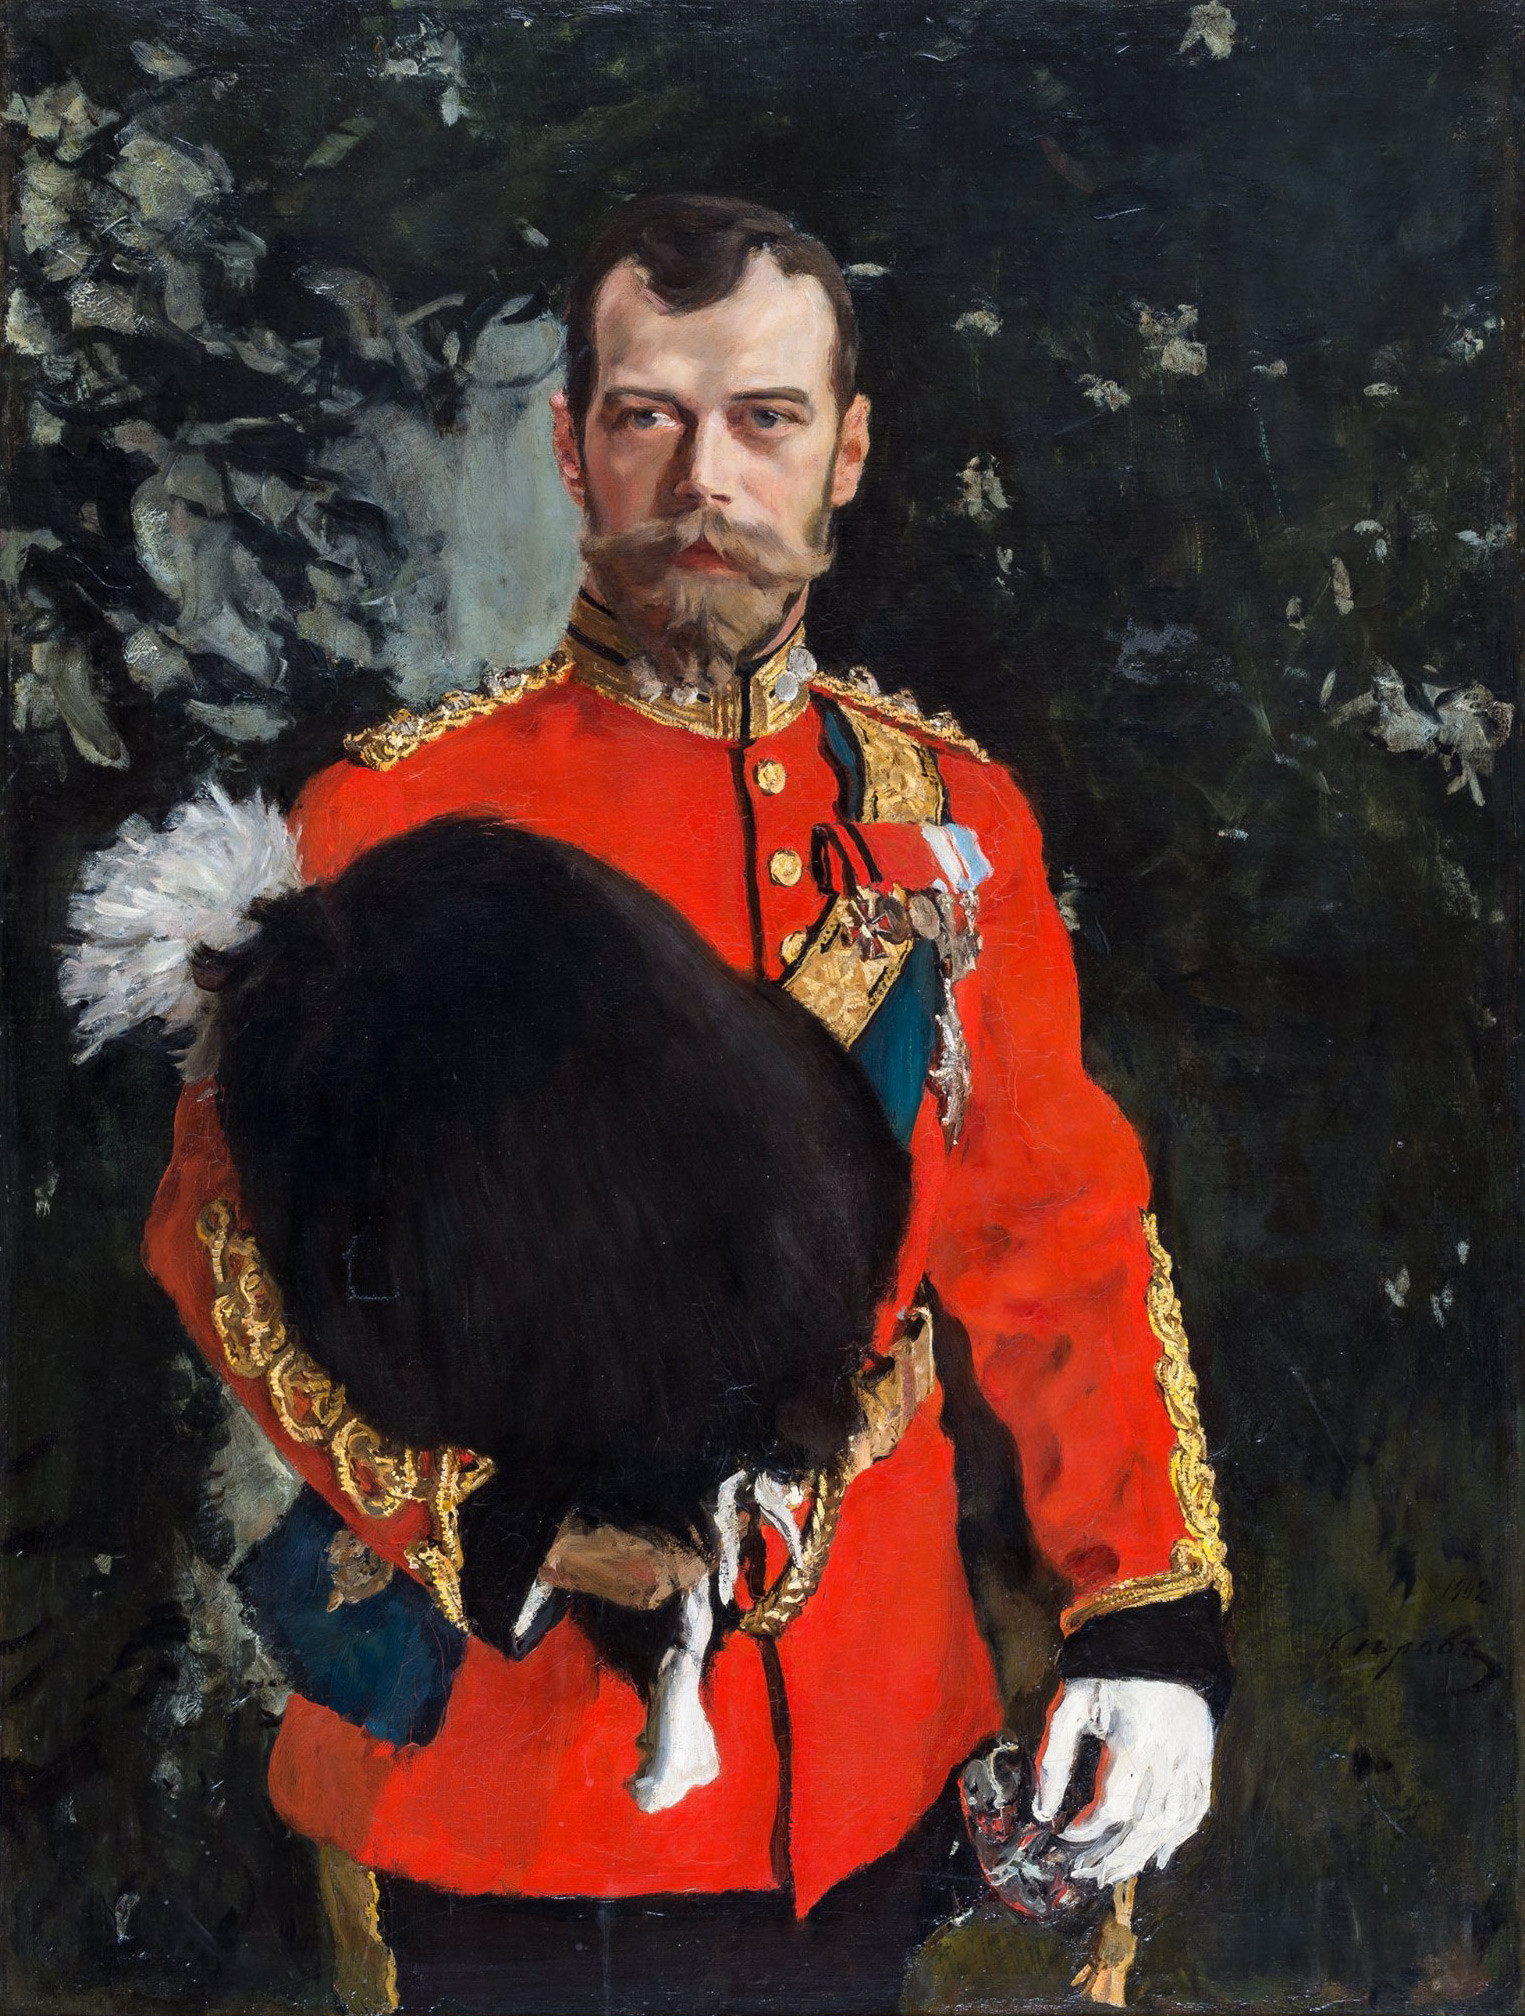 Nikolay II, panglima kehormatan Royal Scots Greys, 1902. Sang kaisar Rusia tampil dengan seragam lengkap sebagai panglima kehormatan 2nd Dragoons (Royal Scots Greys). Karya Valentin Serov.